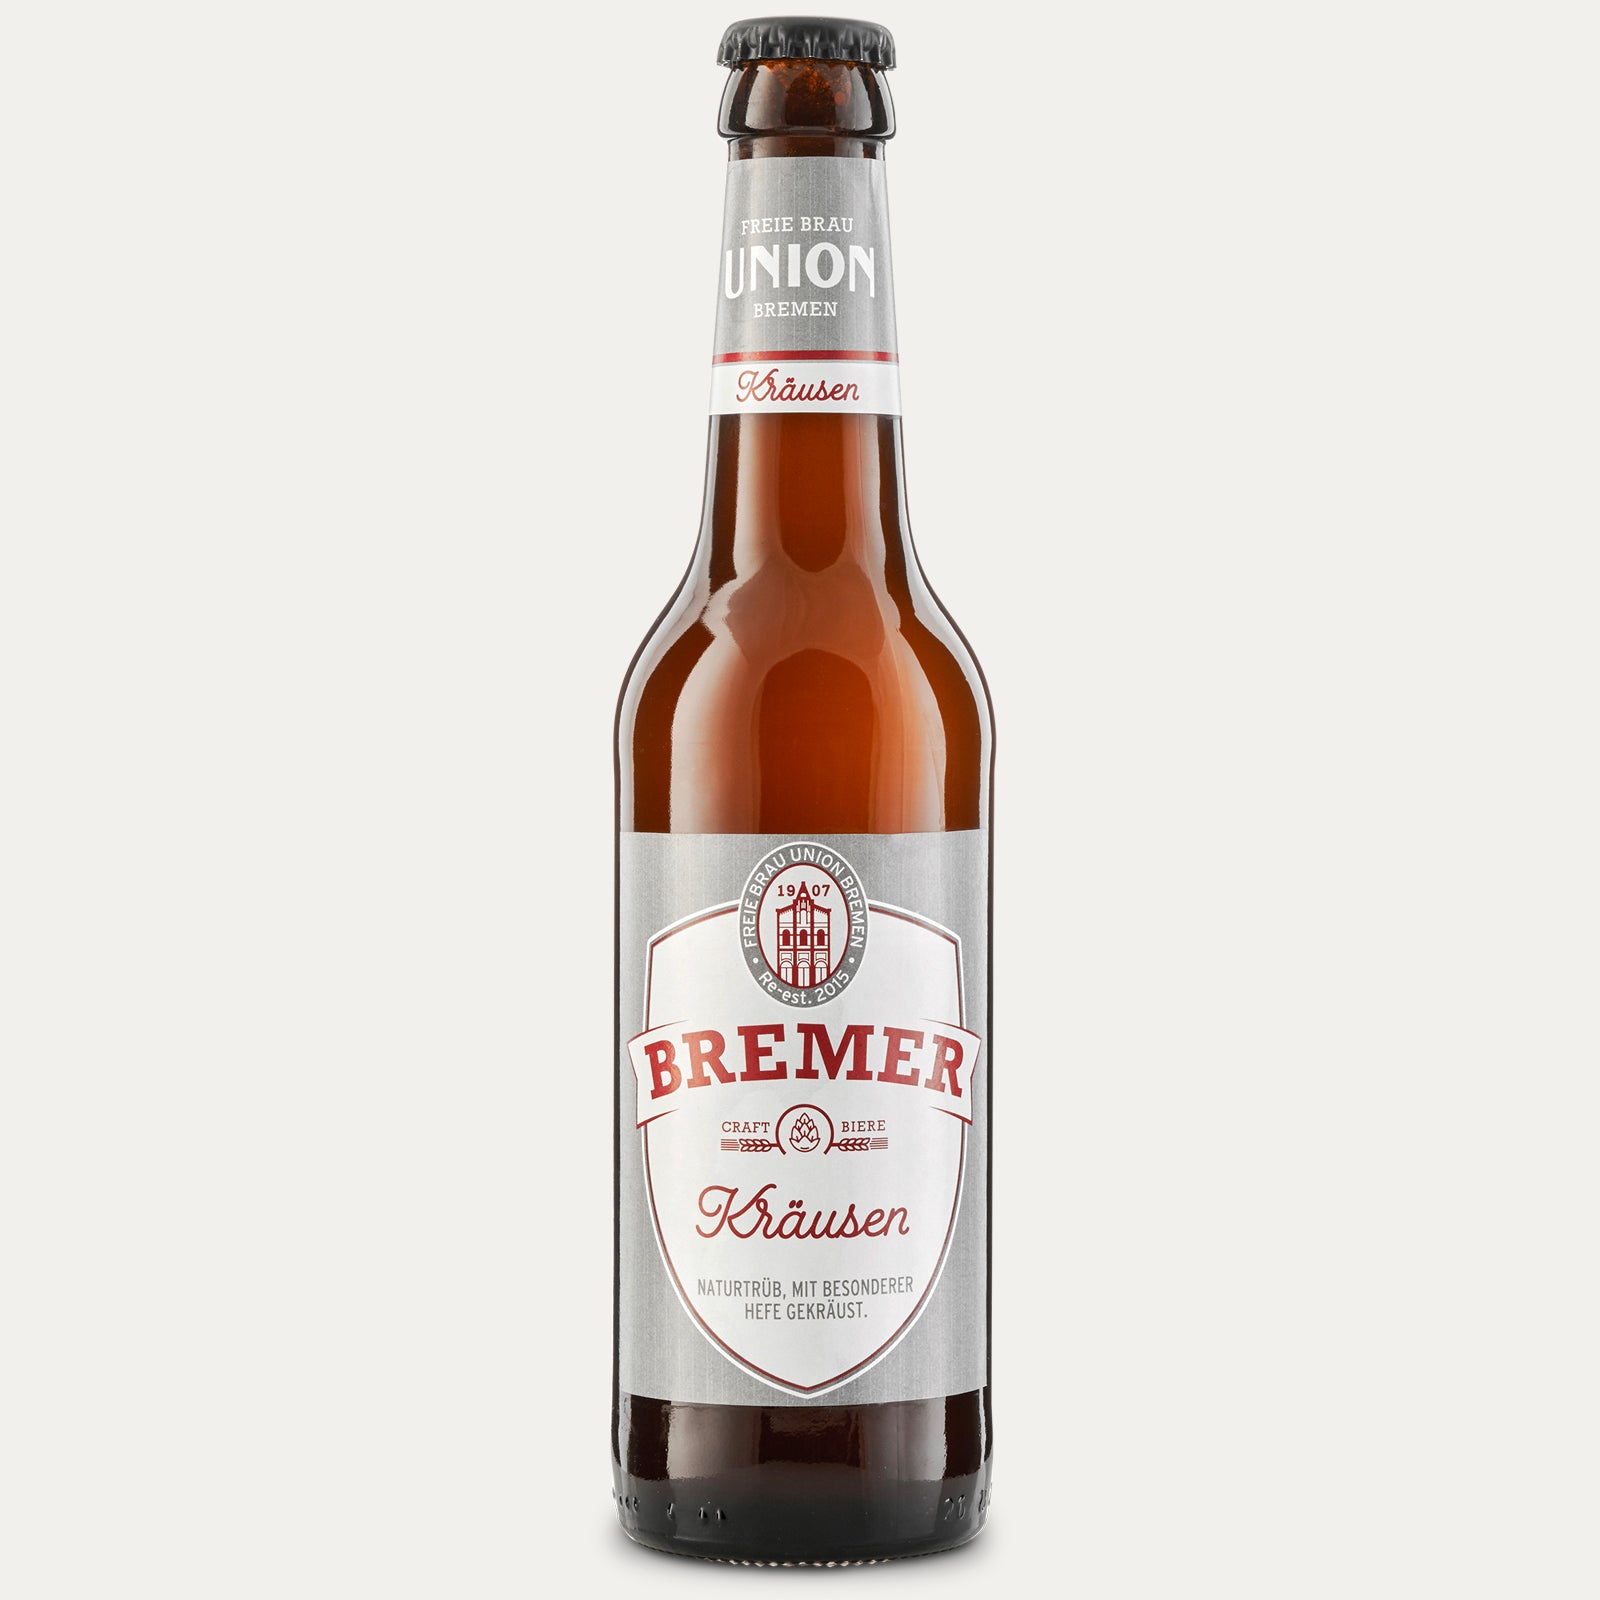 Bremer Kräusen – Flasche 0,33l